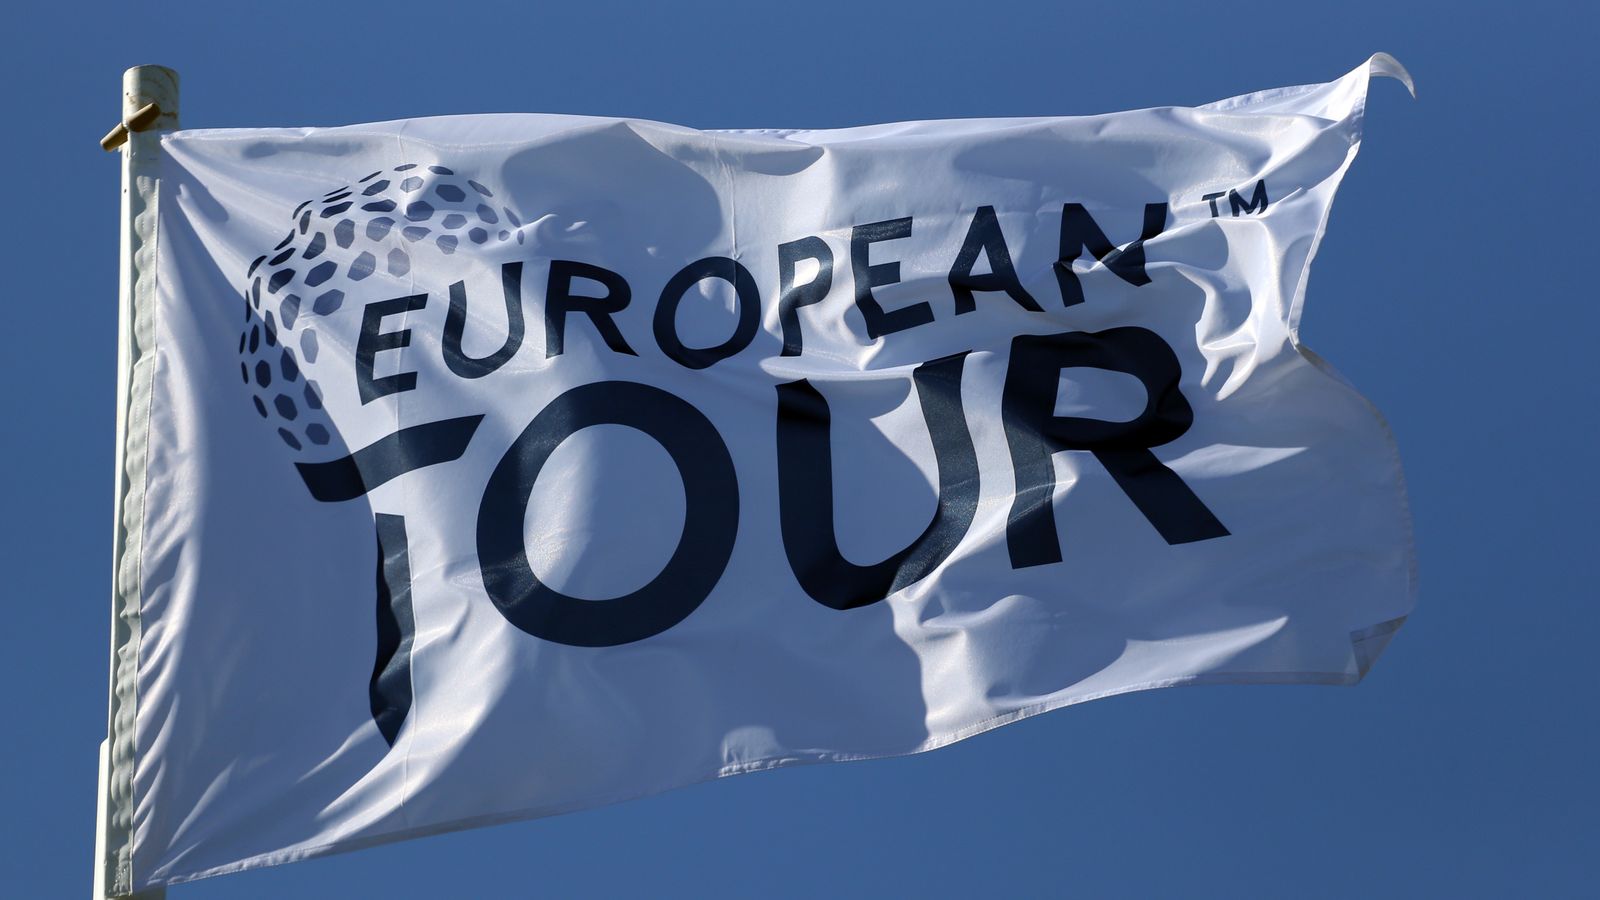 european tour tour golf